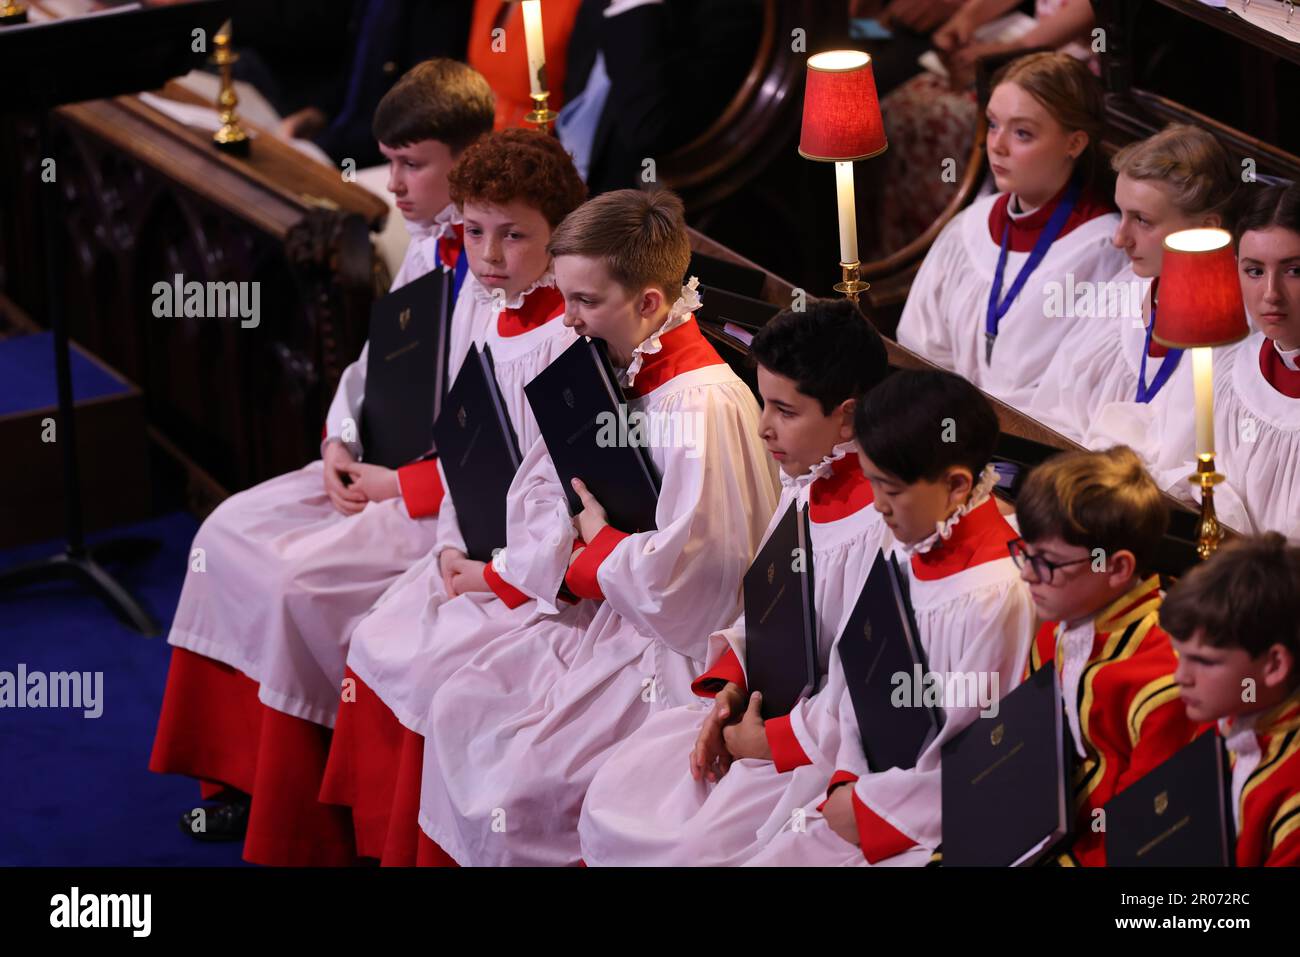 Membres du chœur avant le couronnement du roi Charles III et de la reine Camilla à l'abbaye de Westminster, Londres. Date de la photo: Samedi 6 mai 2023. Banque D'Images